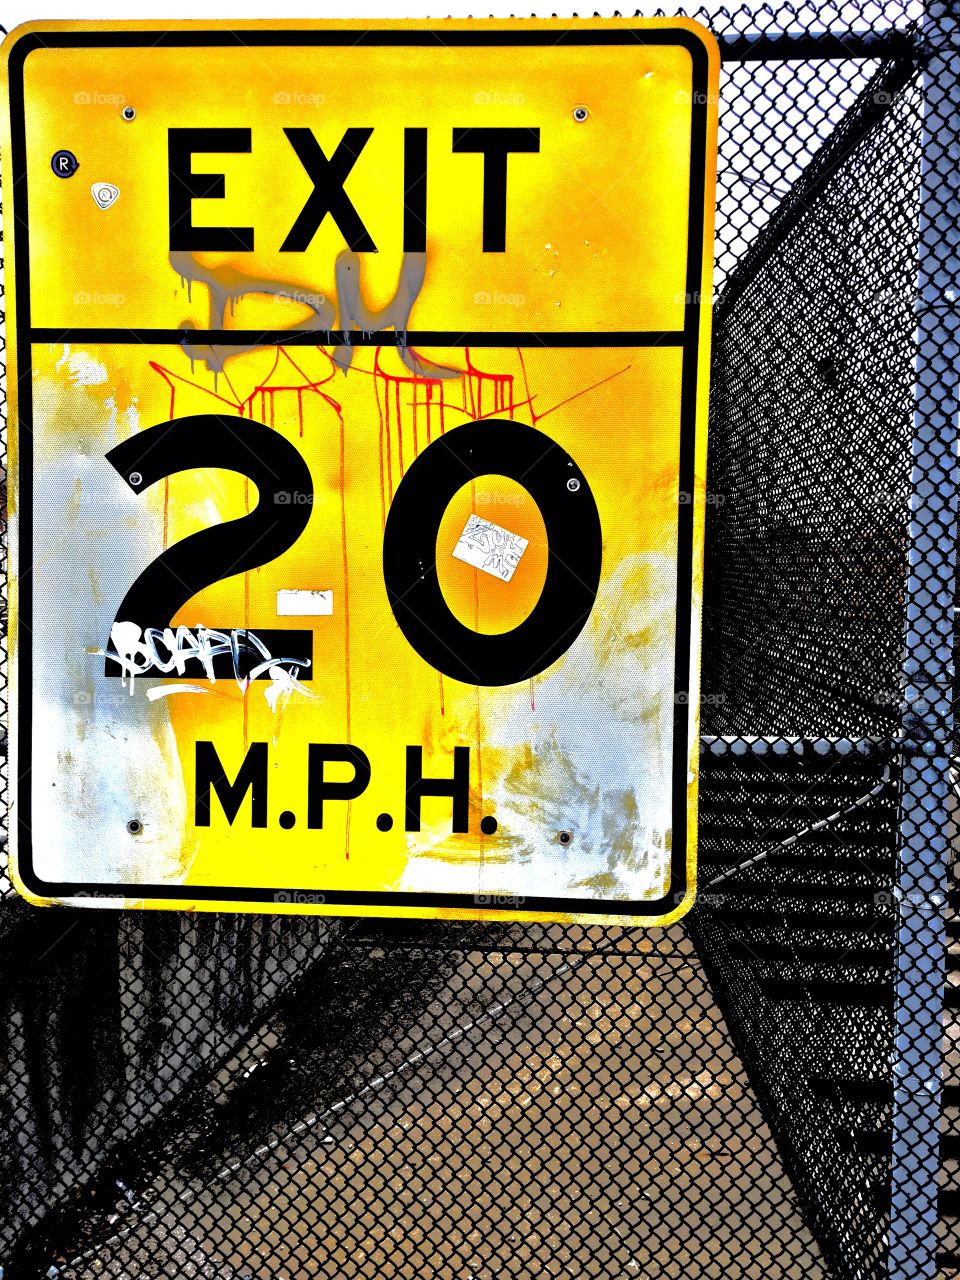 Speed limit graffiti 